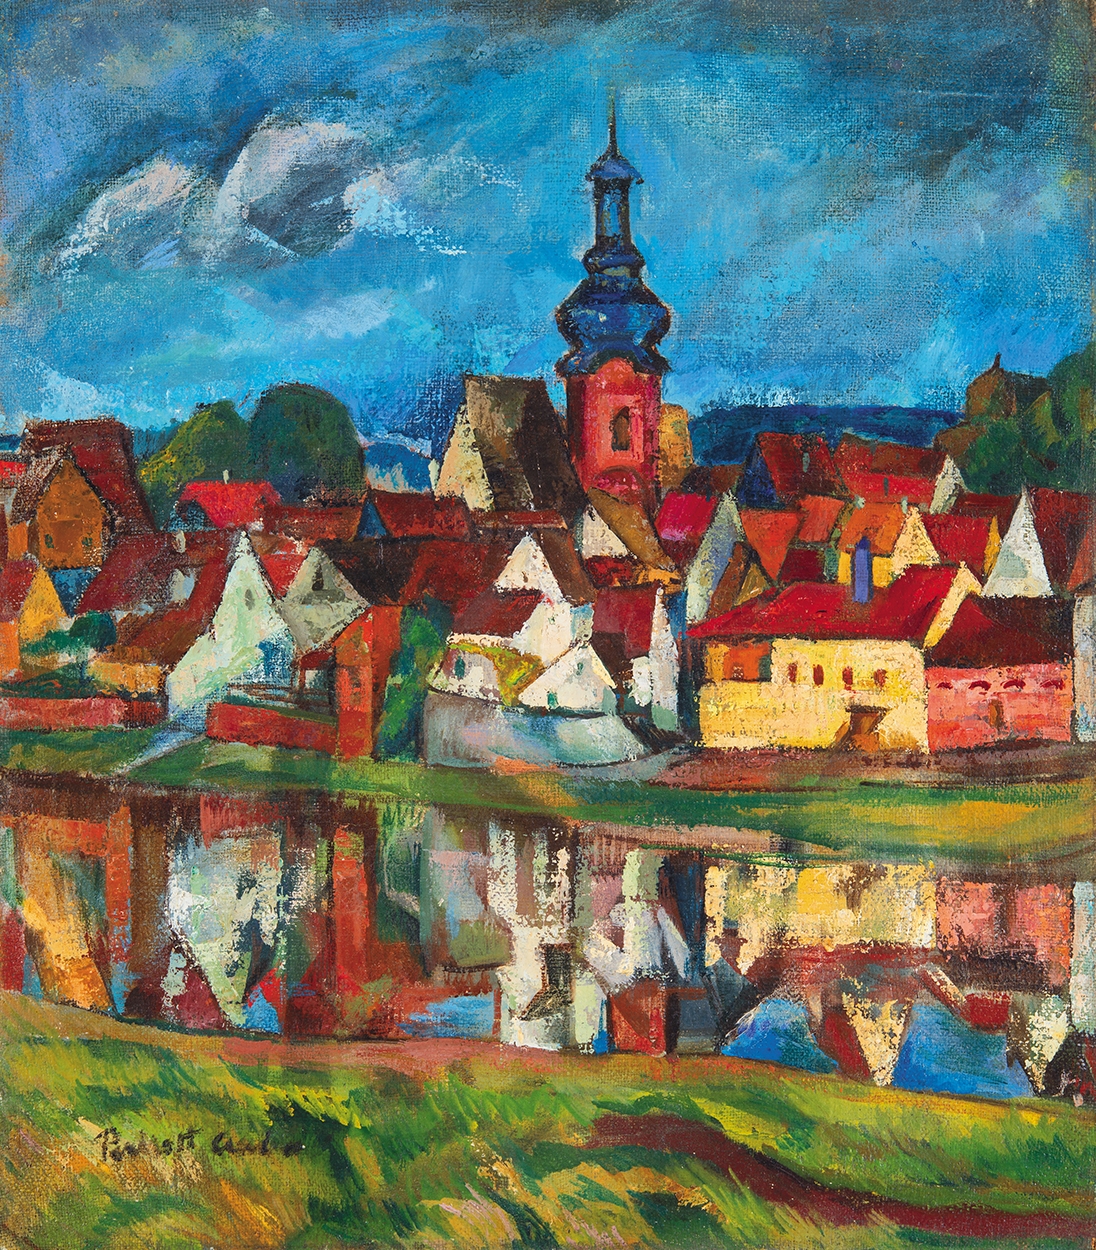 Perlrott-Csaba Vilmos (1880-1955) Wertheim am Main, around 1921